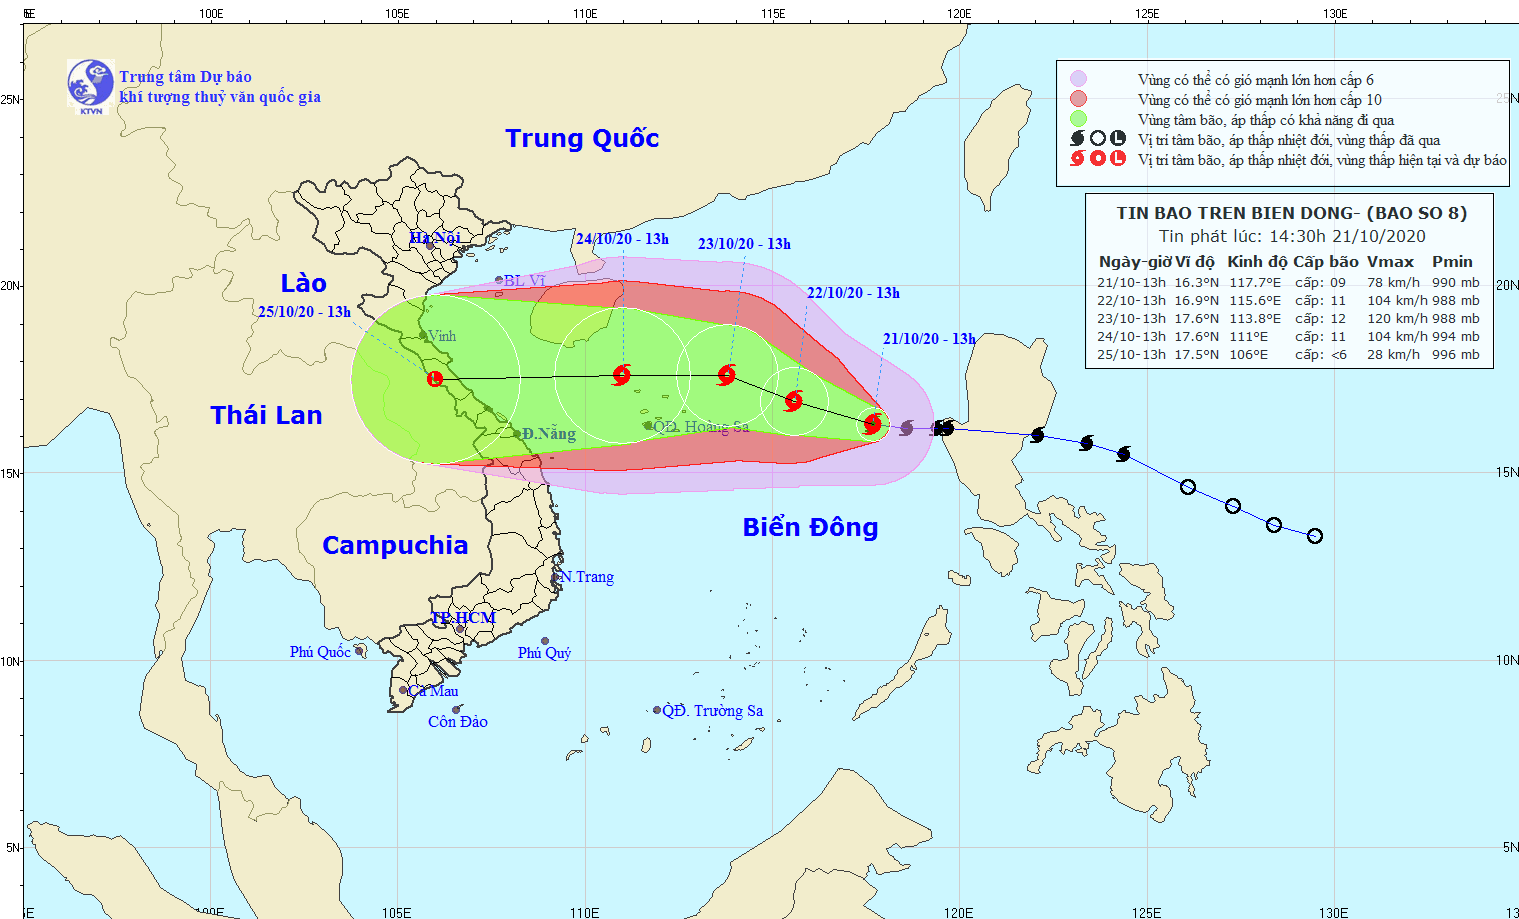 Trung tâm Dự báo Khí tượng thủy văn Quốc gia cho biết bão số 8 đã vào Biển Đông